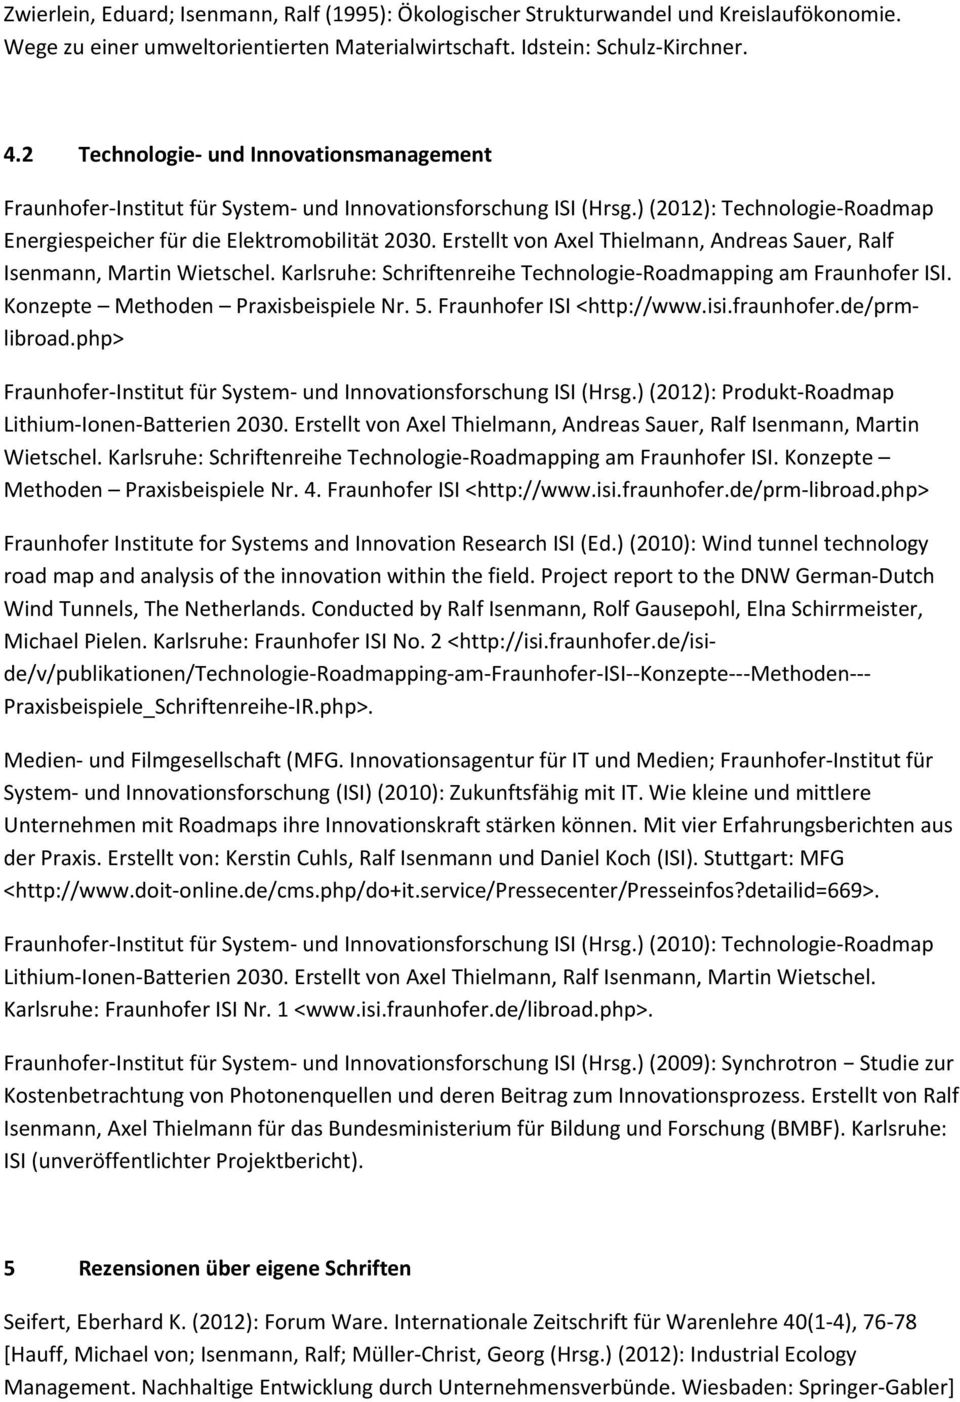 Erstellt von Axel Thielmann, Andreas Sauer, Ralf Isenmann, Martin Wietschel. Karlsruhe: Schriftenreihe Technologie Roadmapping am Fraunhofer ISI. Konzepte Methoden Praxisbeispiele Nr. 5.